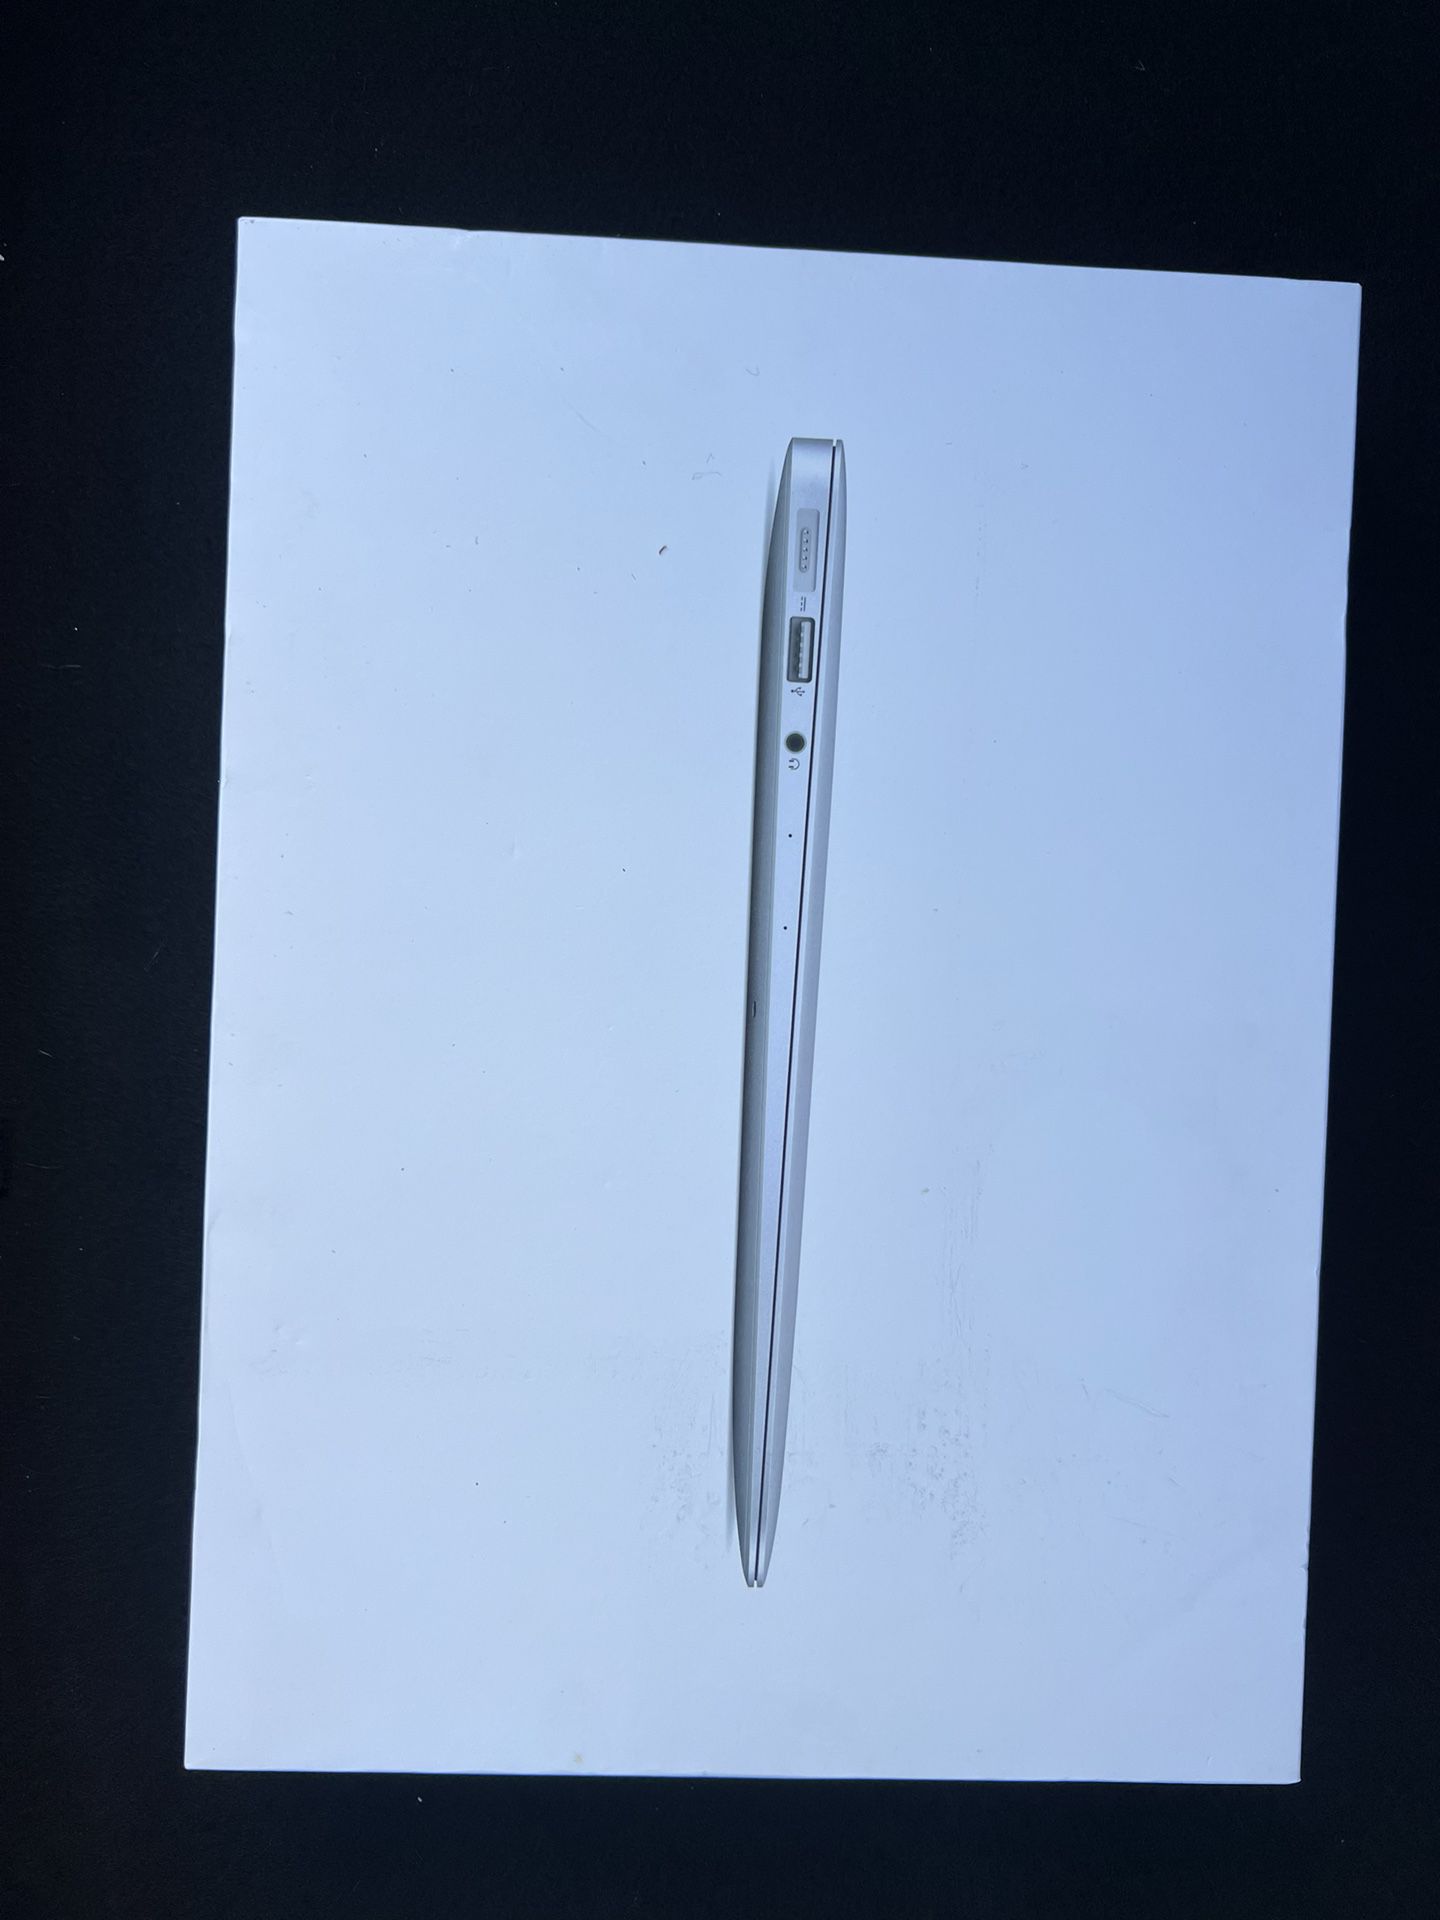 MacBook Air 2017 